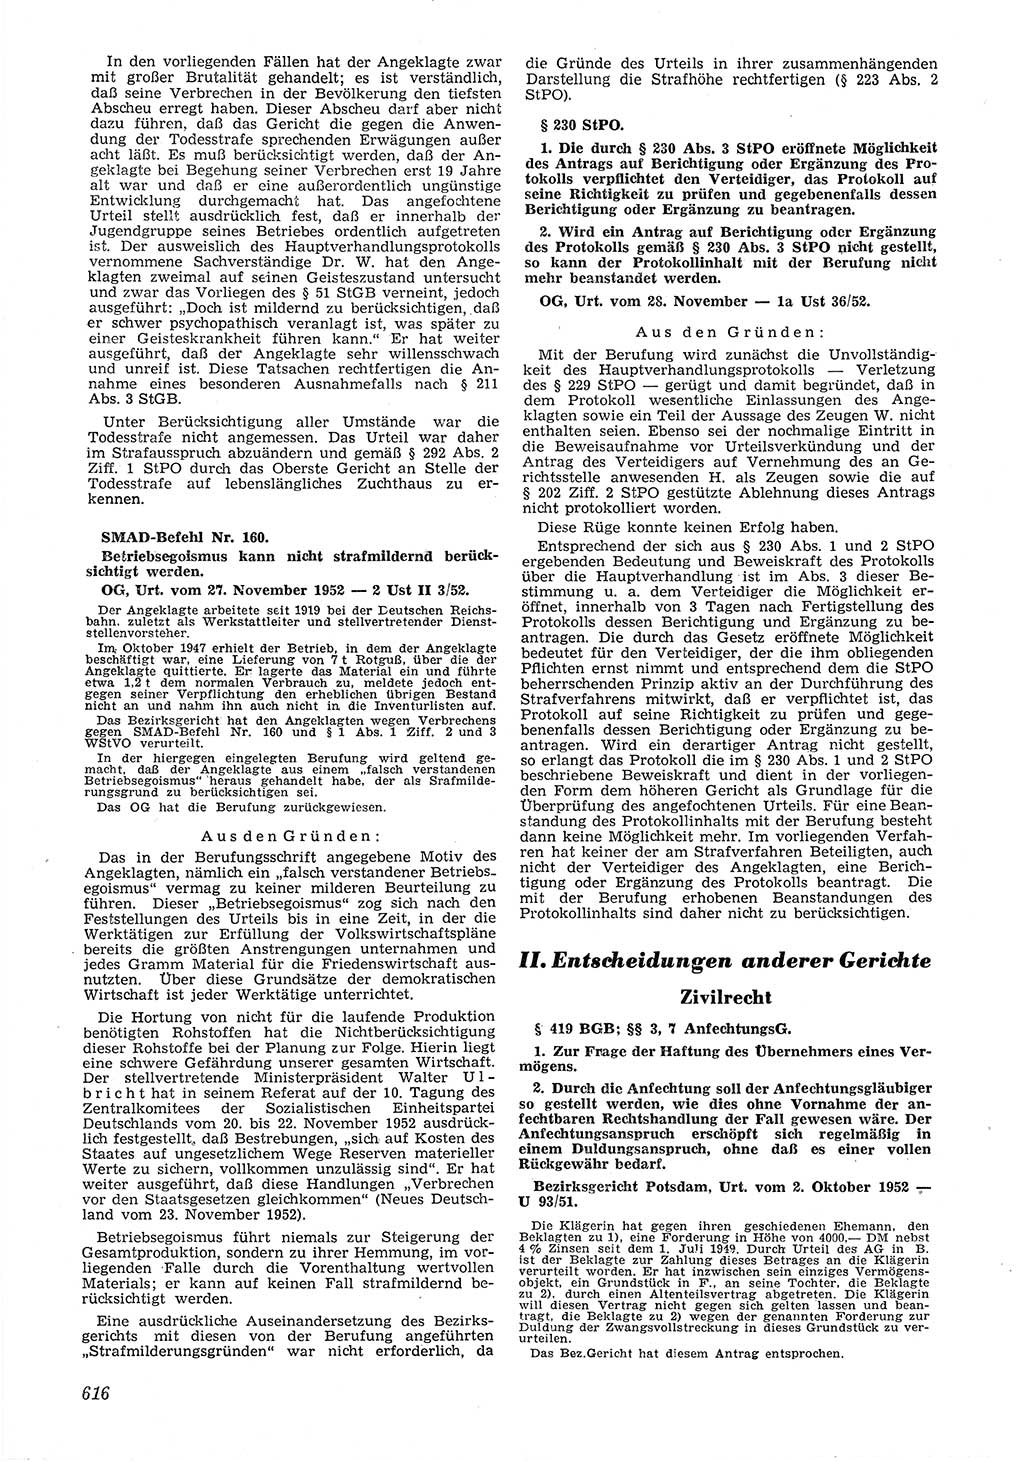 Neue Justiz (NJ), Zeitschrift für Recht und Rechtswissenschaft [Deutsche Demokratische Republik (DDR)], 6. Jahrgang 1952, Seite 616 (NJ DDR 1952, S. 616)